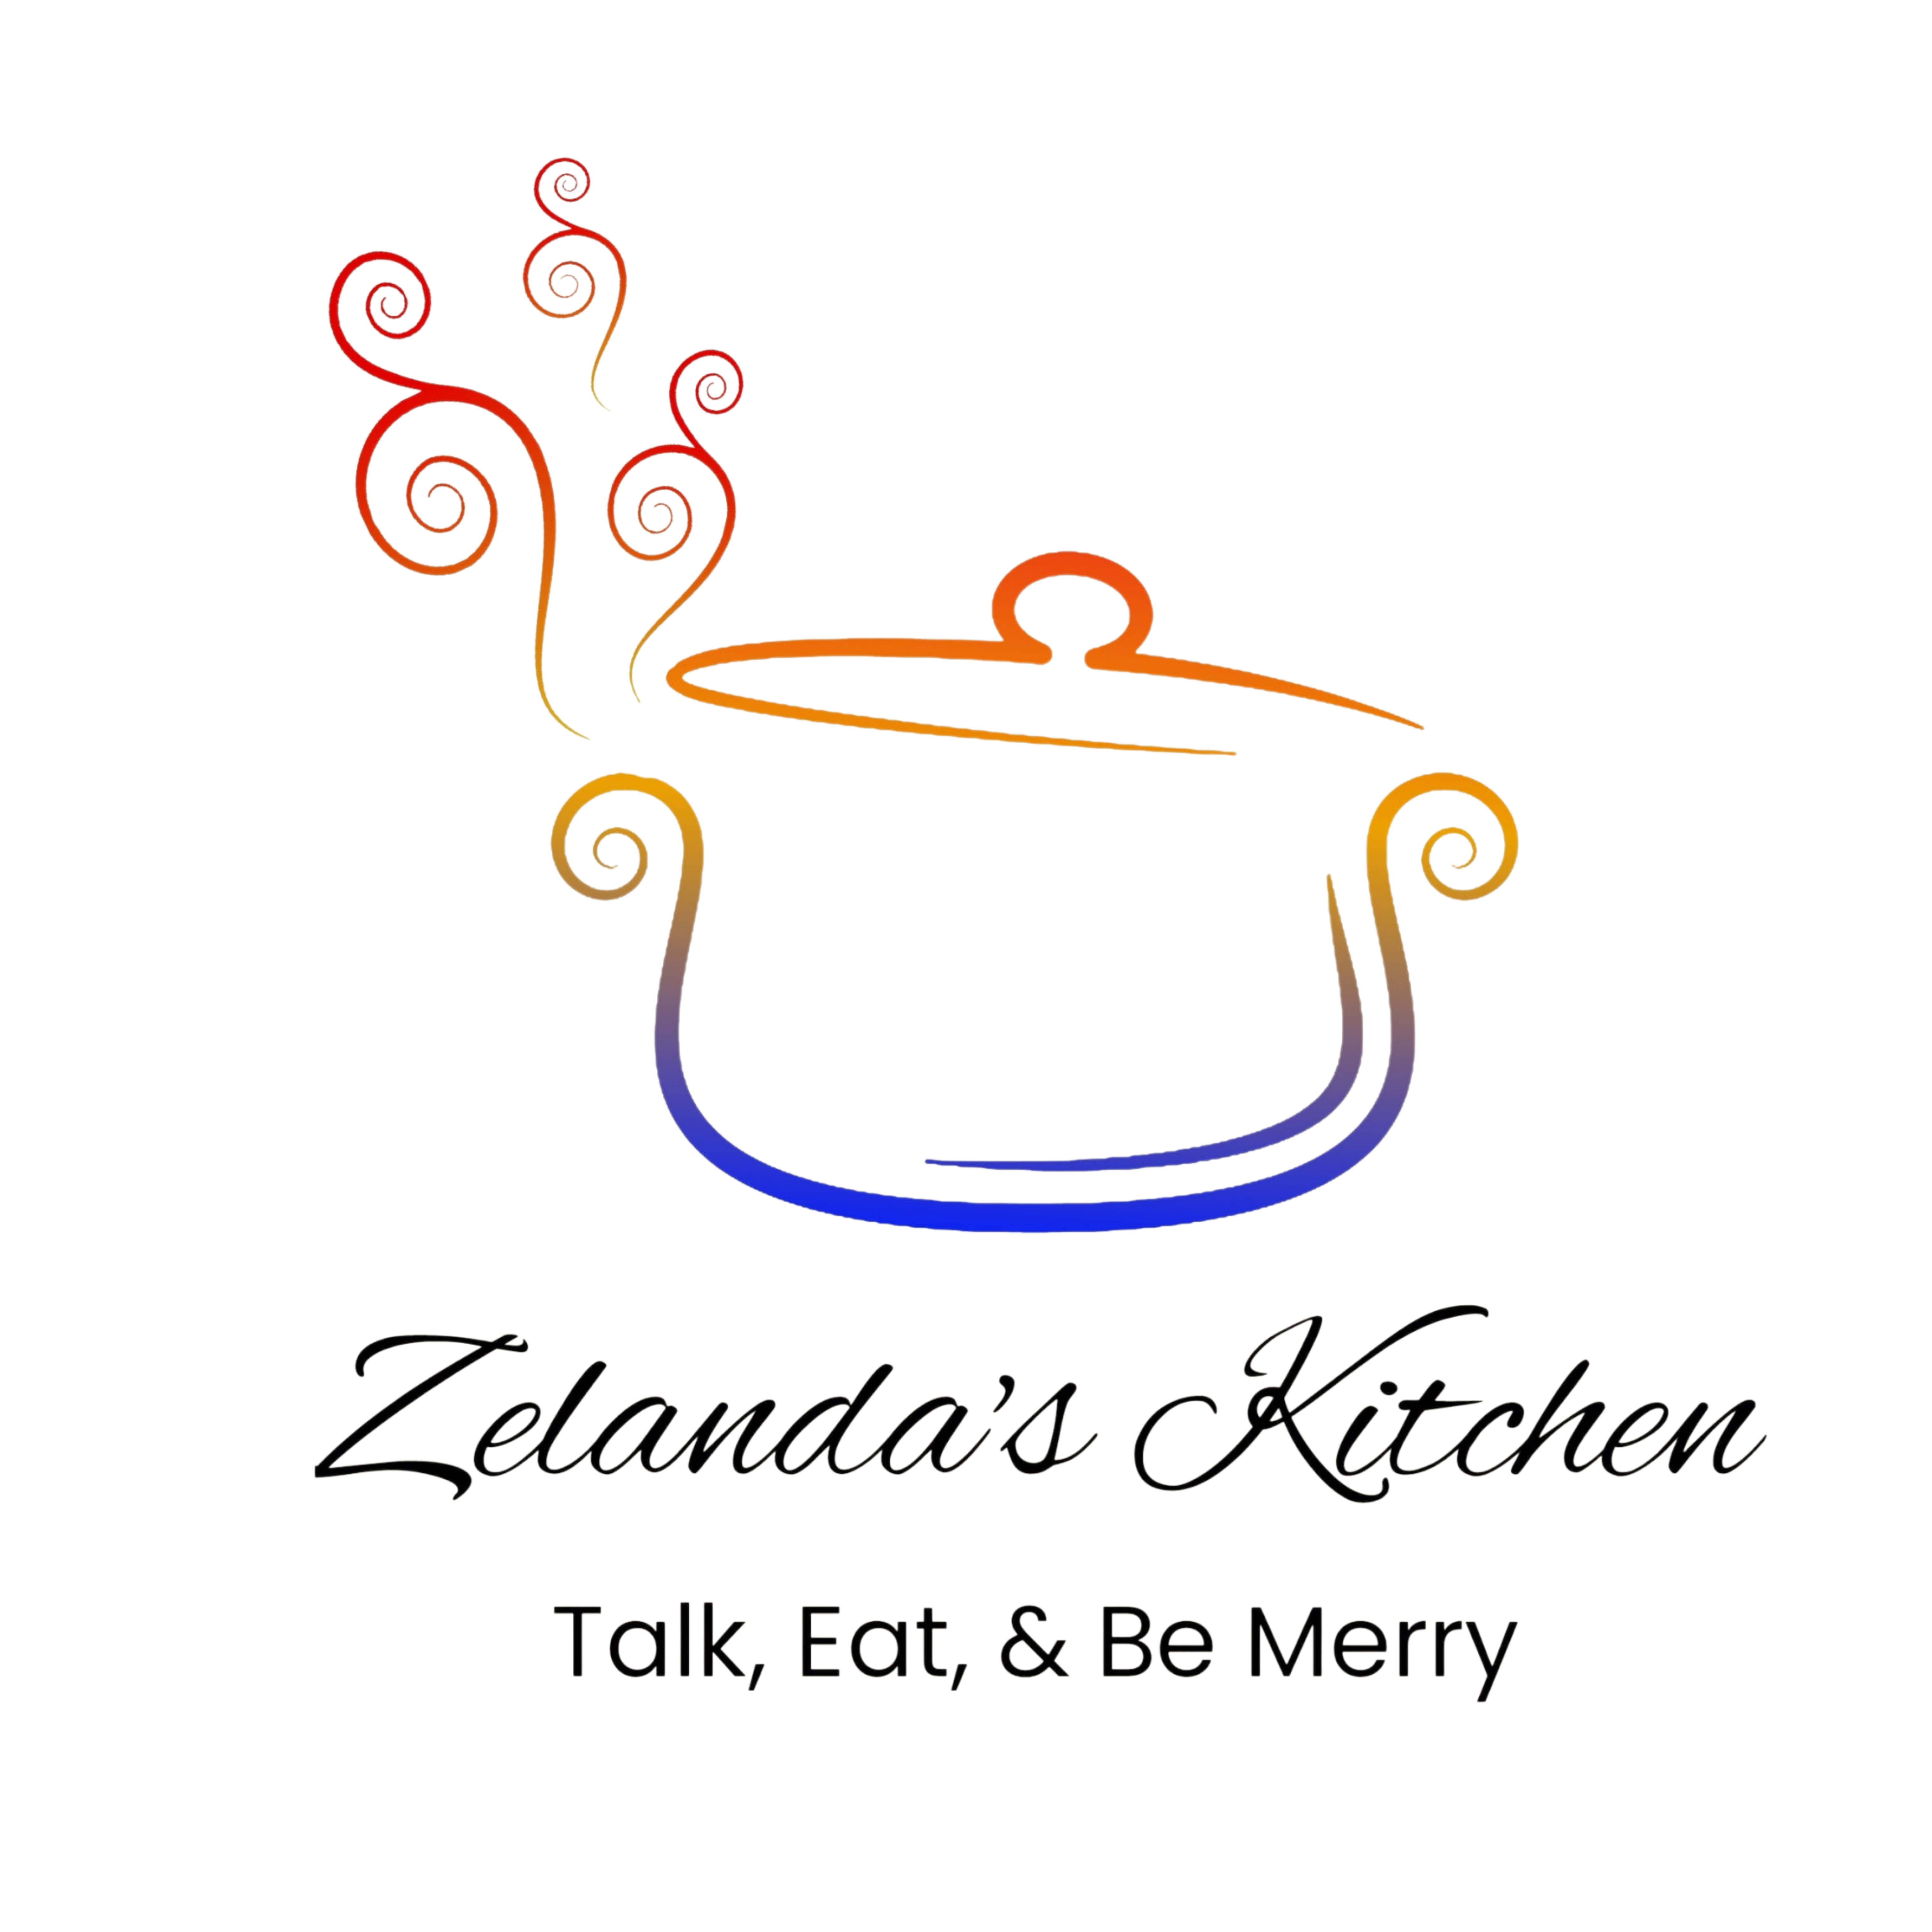 Zelanda's Kitchen